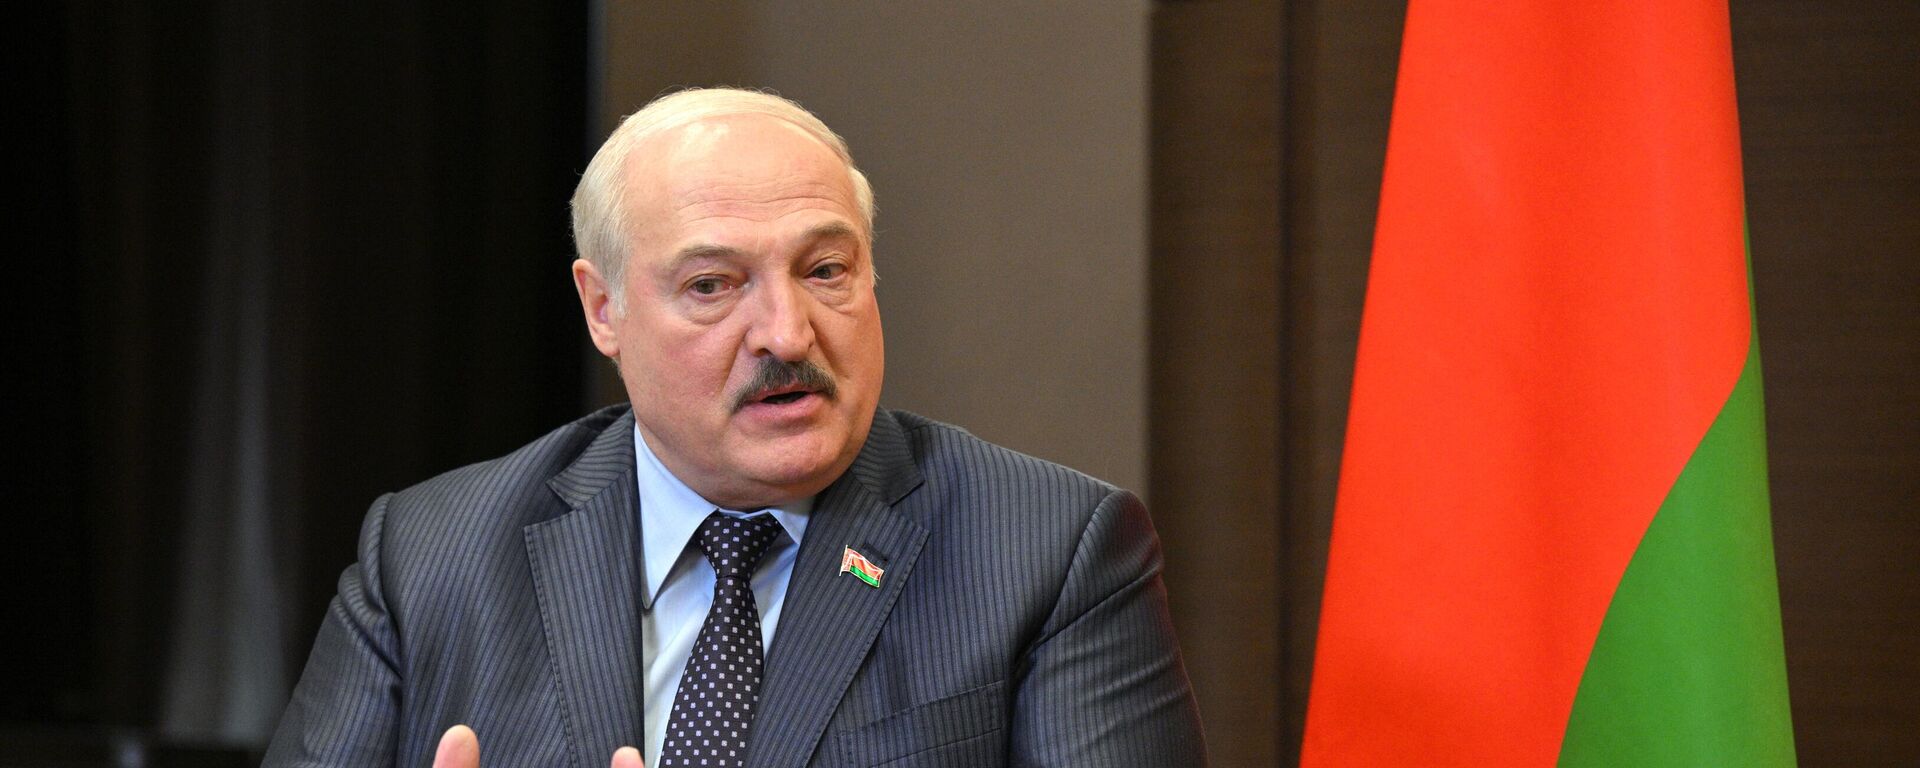  Alexandr Lukashenko, el presidente de Bielorrusia - Sputnik Mundo, 1920, 17.06.2022